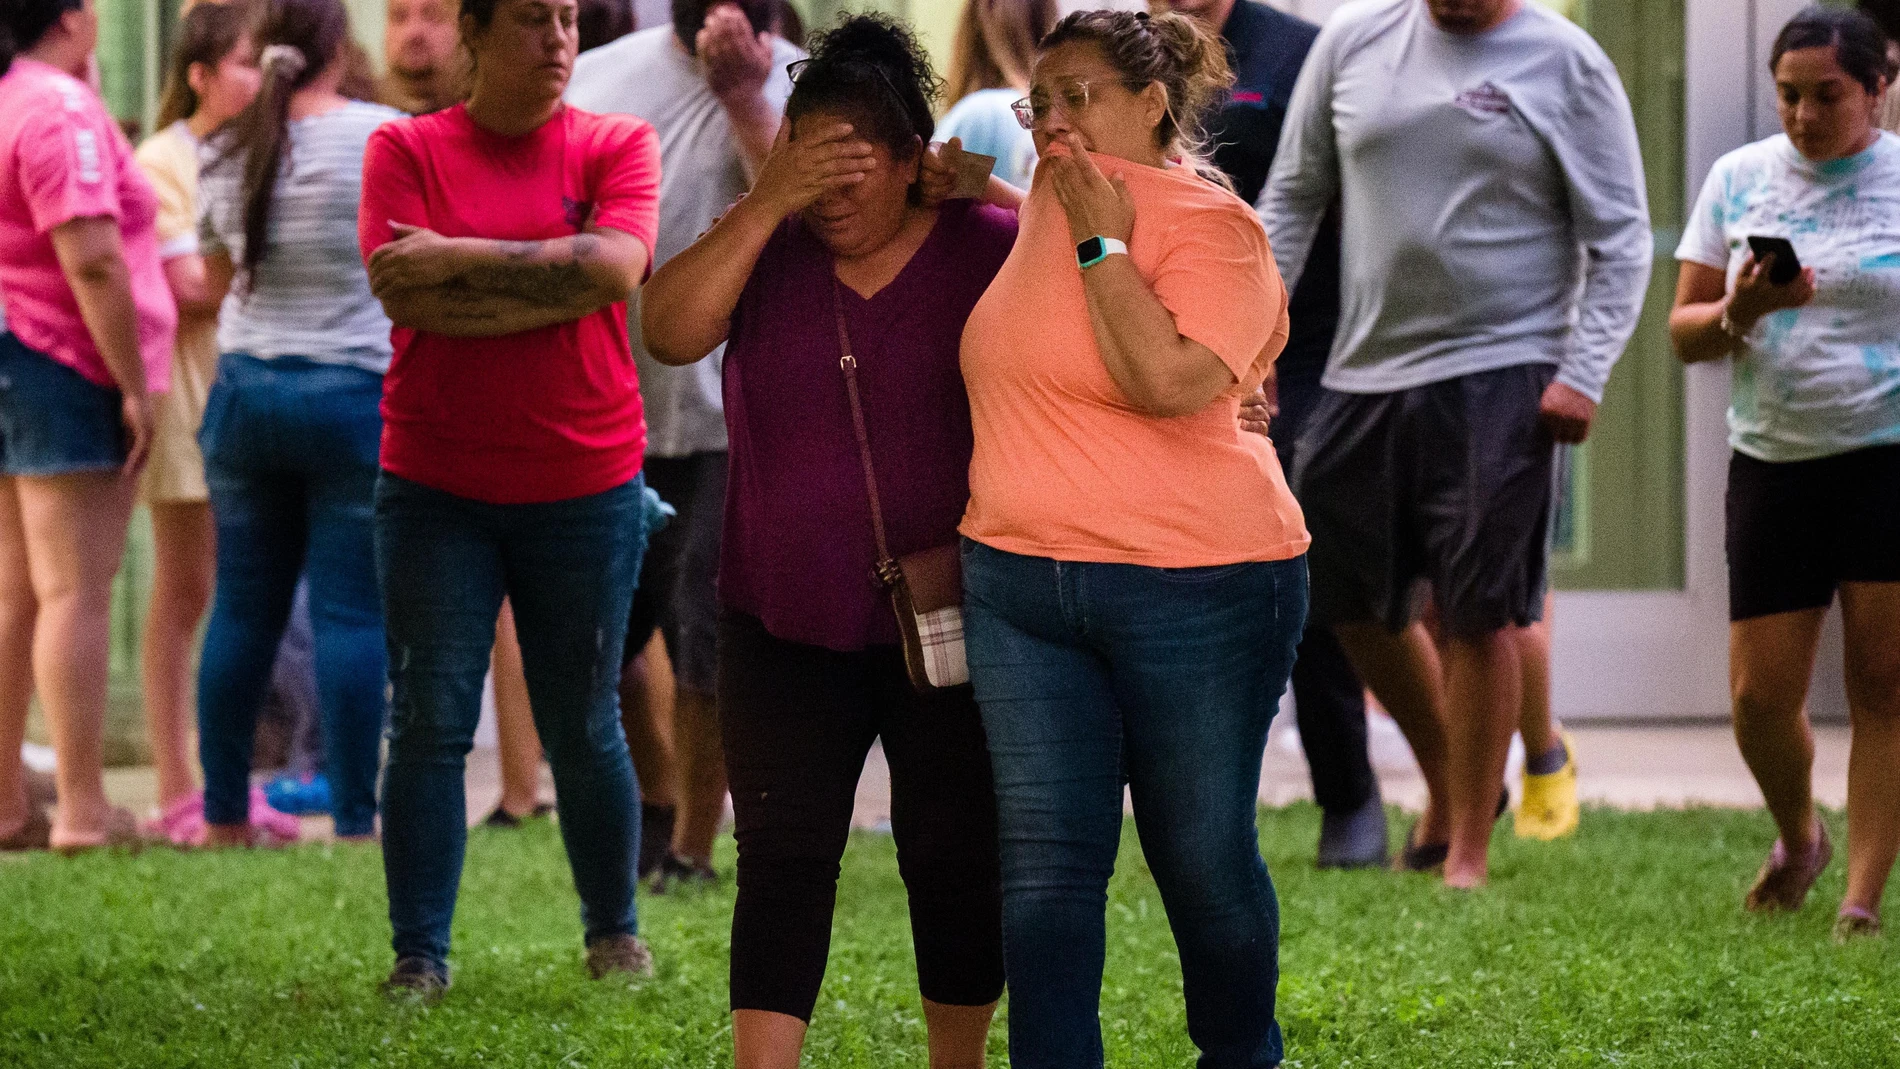 Dos mujeres esperan noticias de lo ocurrido en la Escuela Primaria de Uvalde, Texas, después de que un joven asesinara a 21 personas, 19 de ellas niños.